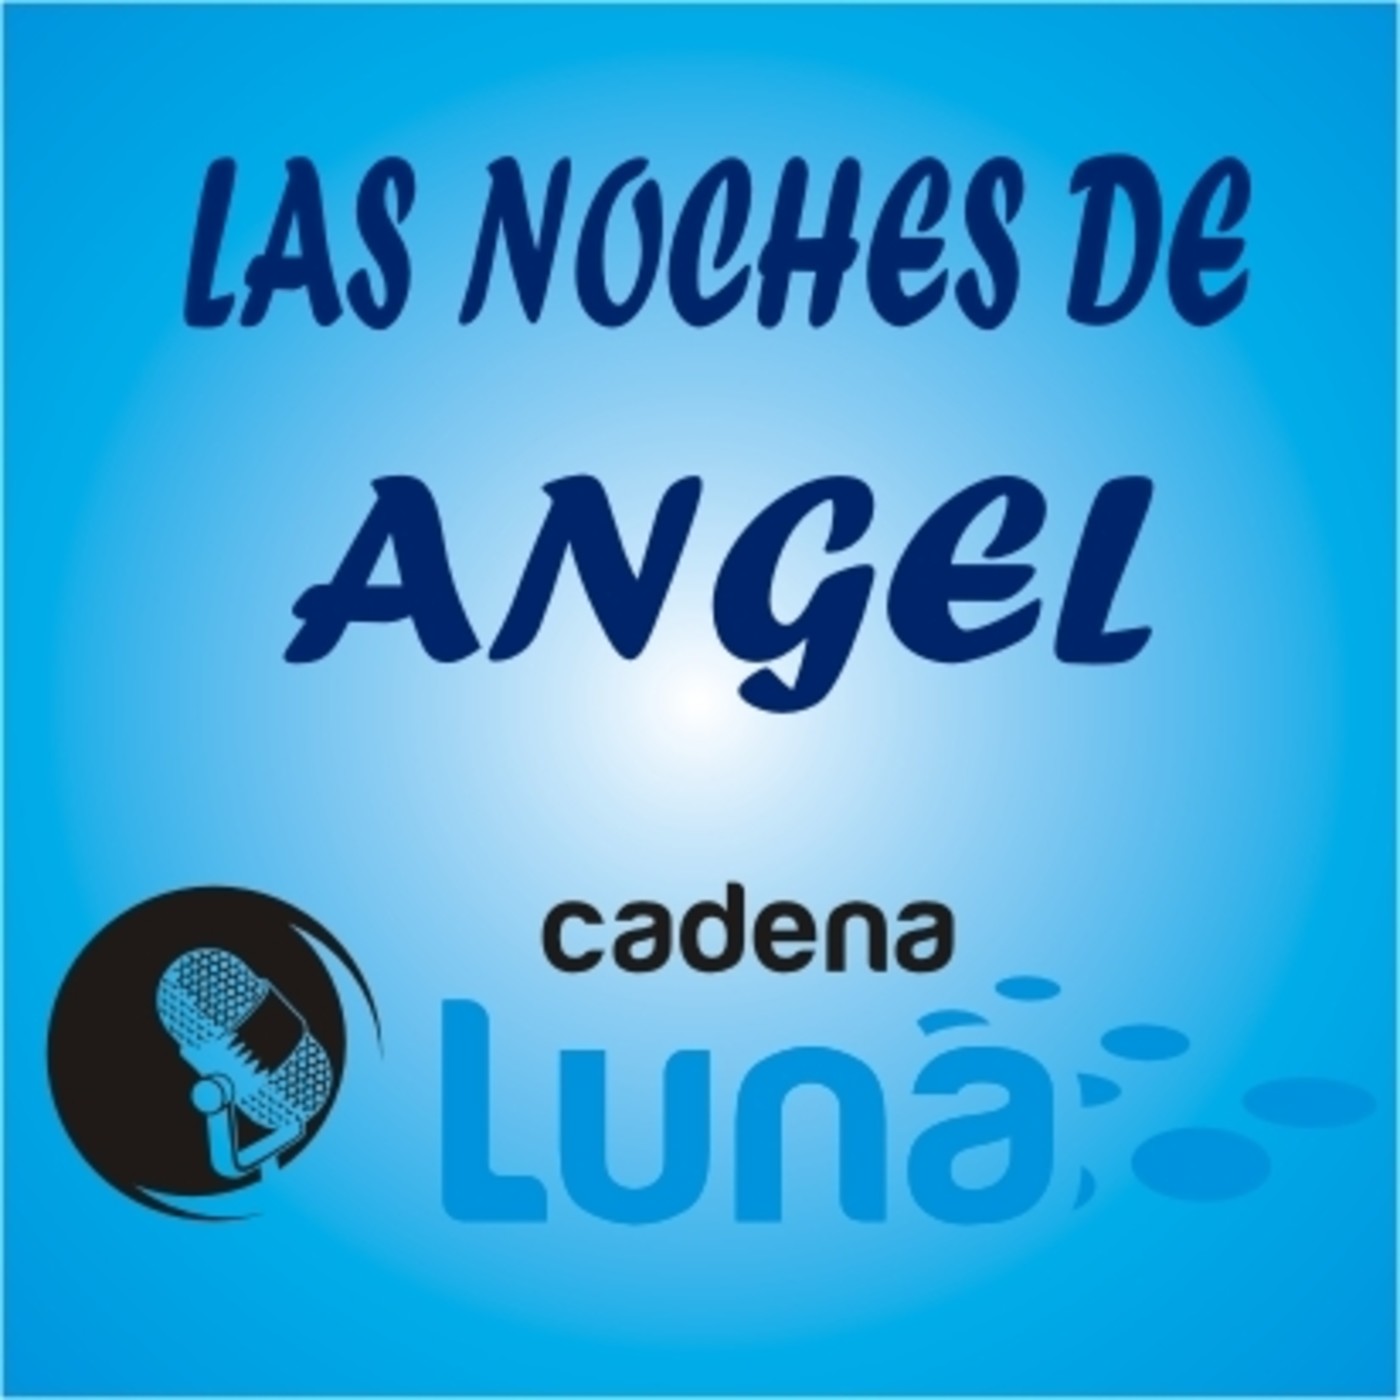 Las noches de Angel cadena luna - 20 - 04 - 22